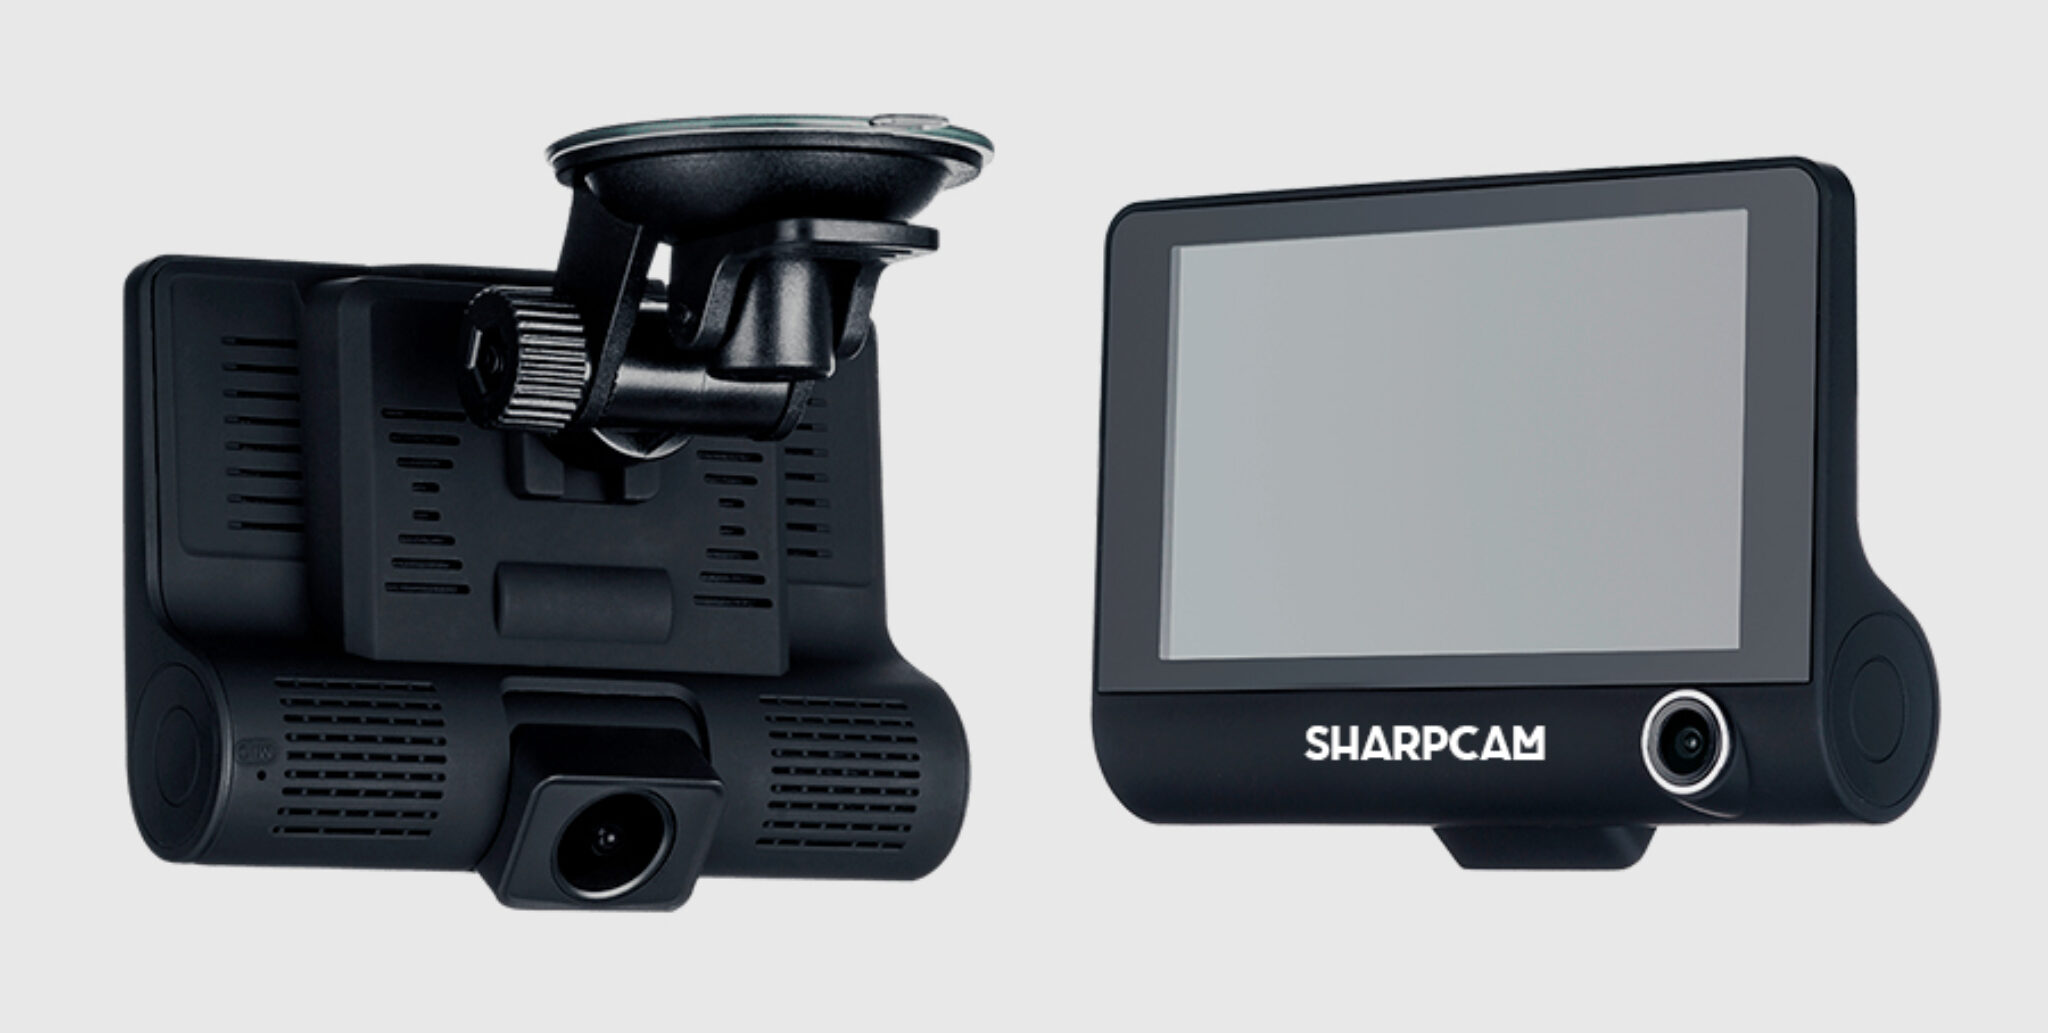 SHARPCAM z7 – видеорегистратор. Видеорегистратор Dixon r850, 3 камеры. SHARPCAM. SHARPCAM z7 видеорегистратор отзывы. Многофункциональное регистратор